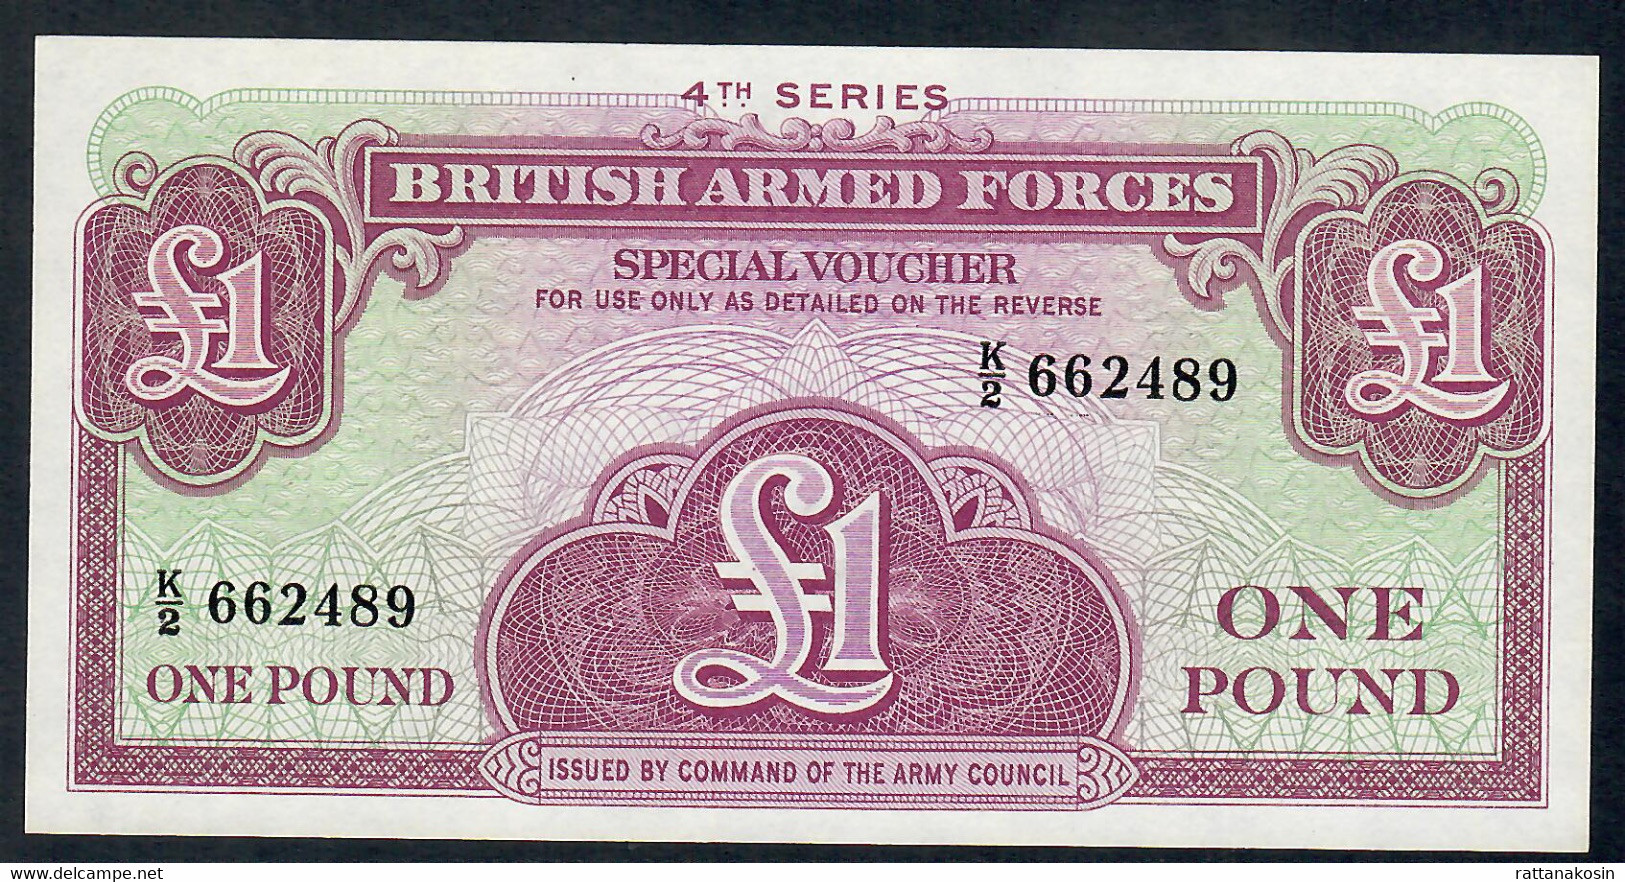 GREAT BRITAIN  PM36a 1 POUND     1962   UNC. - Fuerzas Armadas Británicas & Recibos Especiales